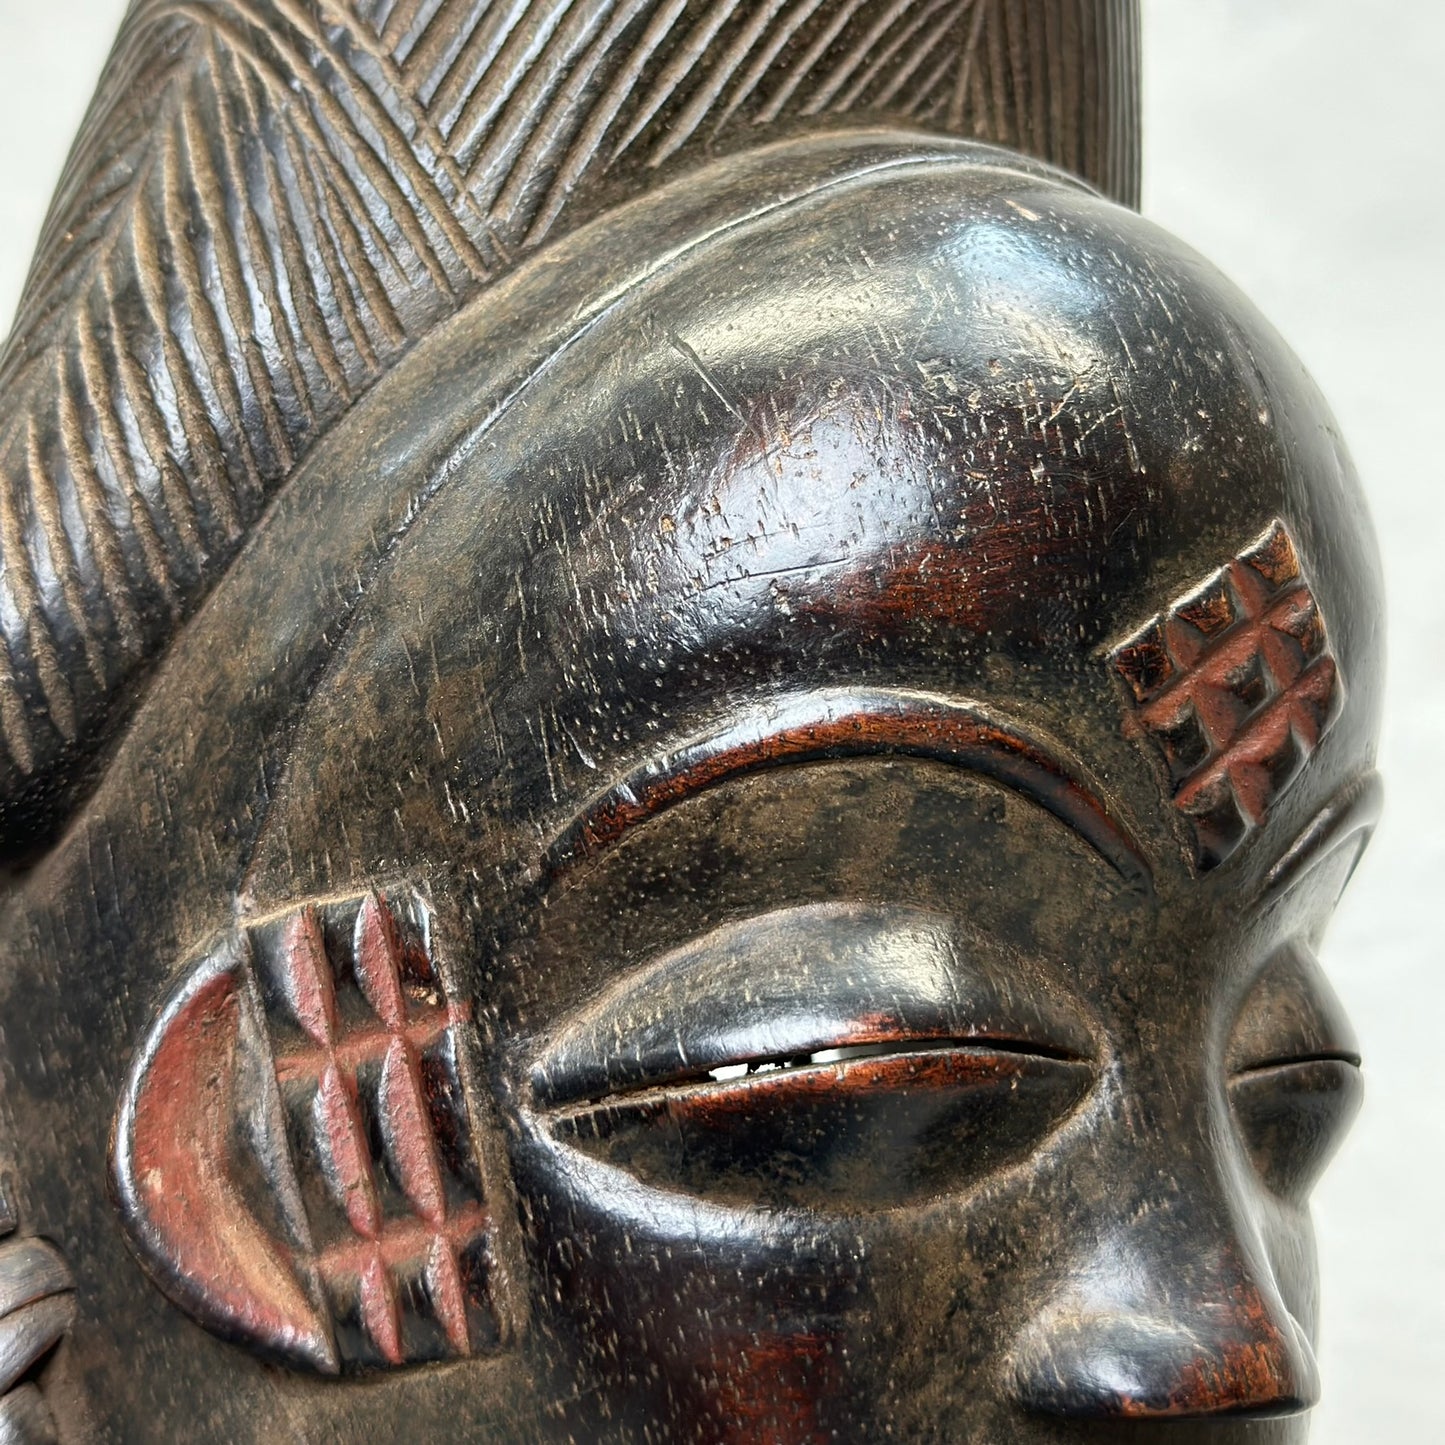 Punu Mask - Gabon